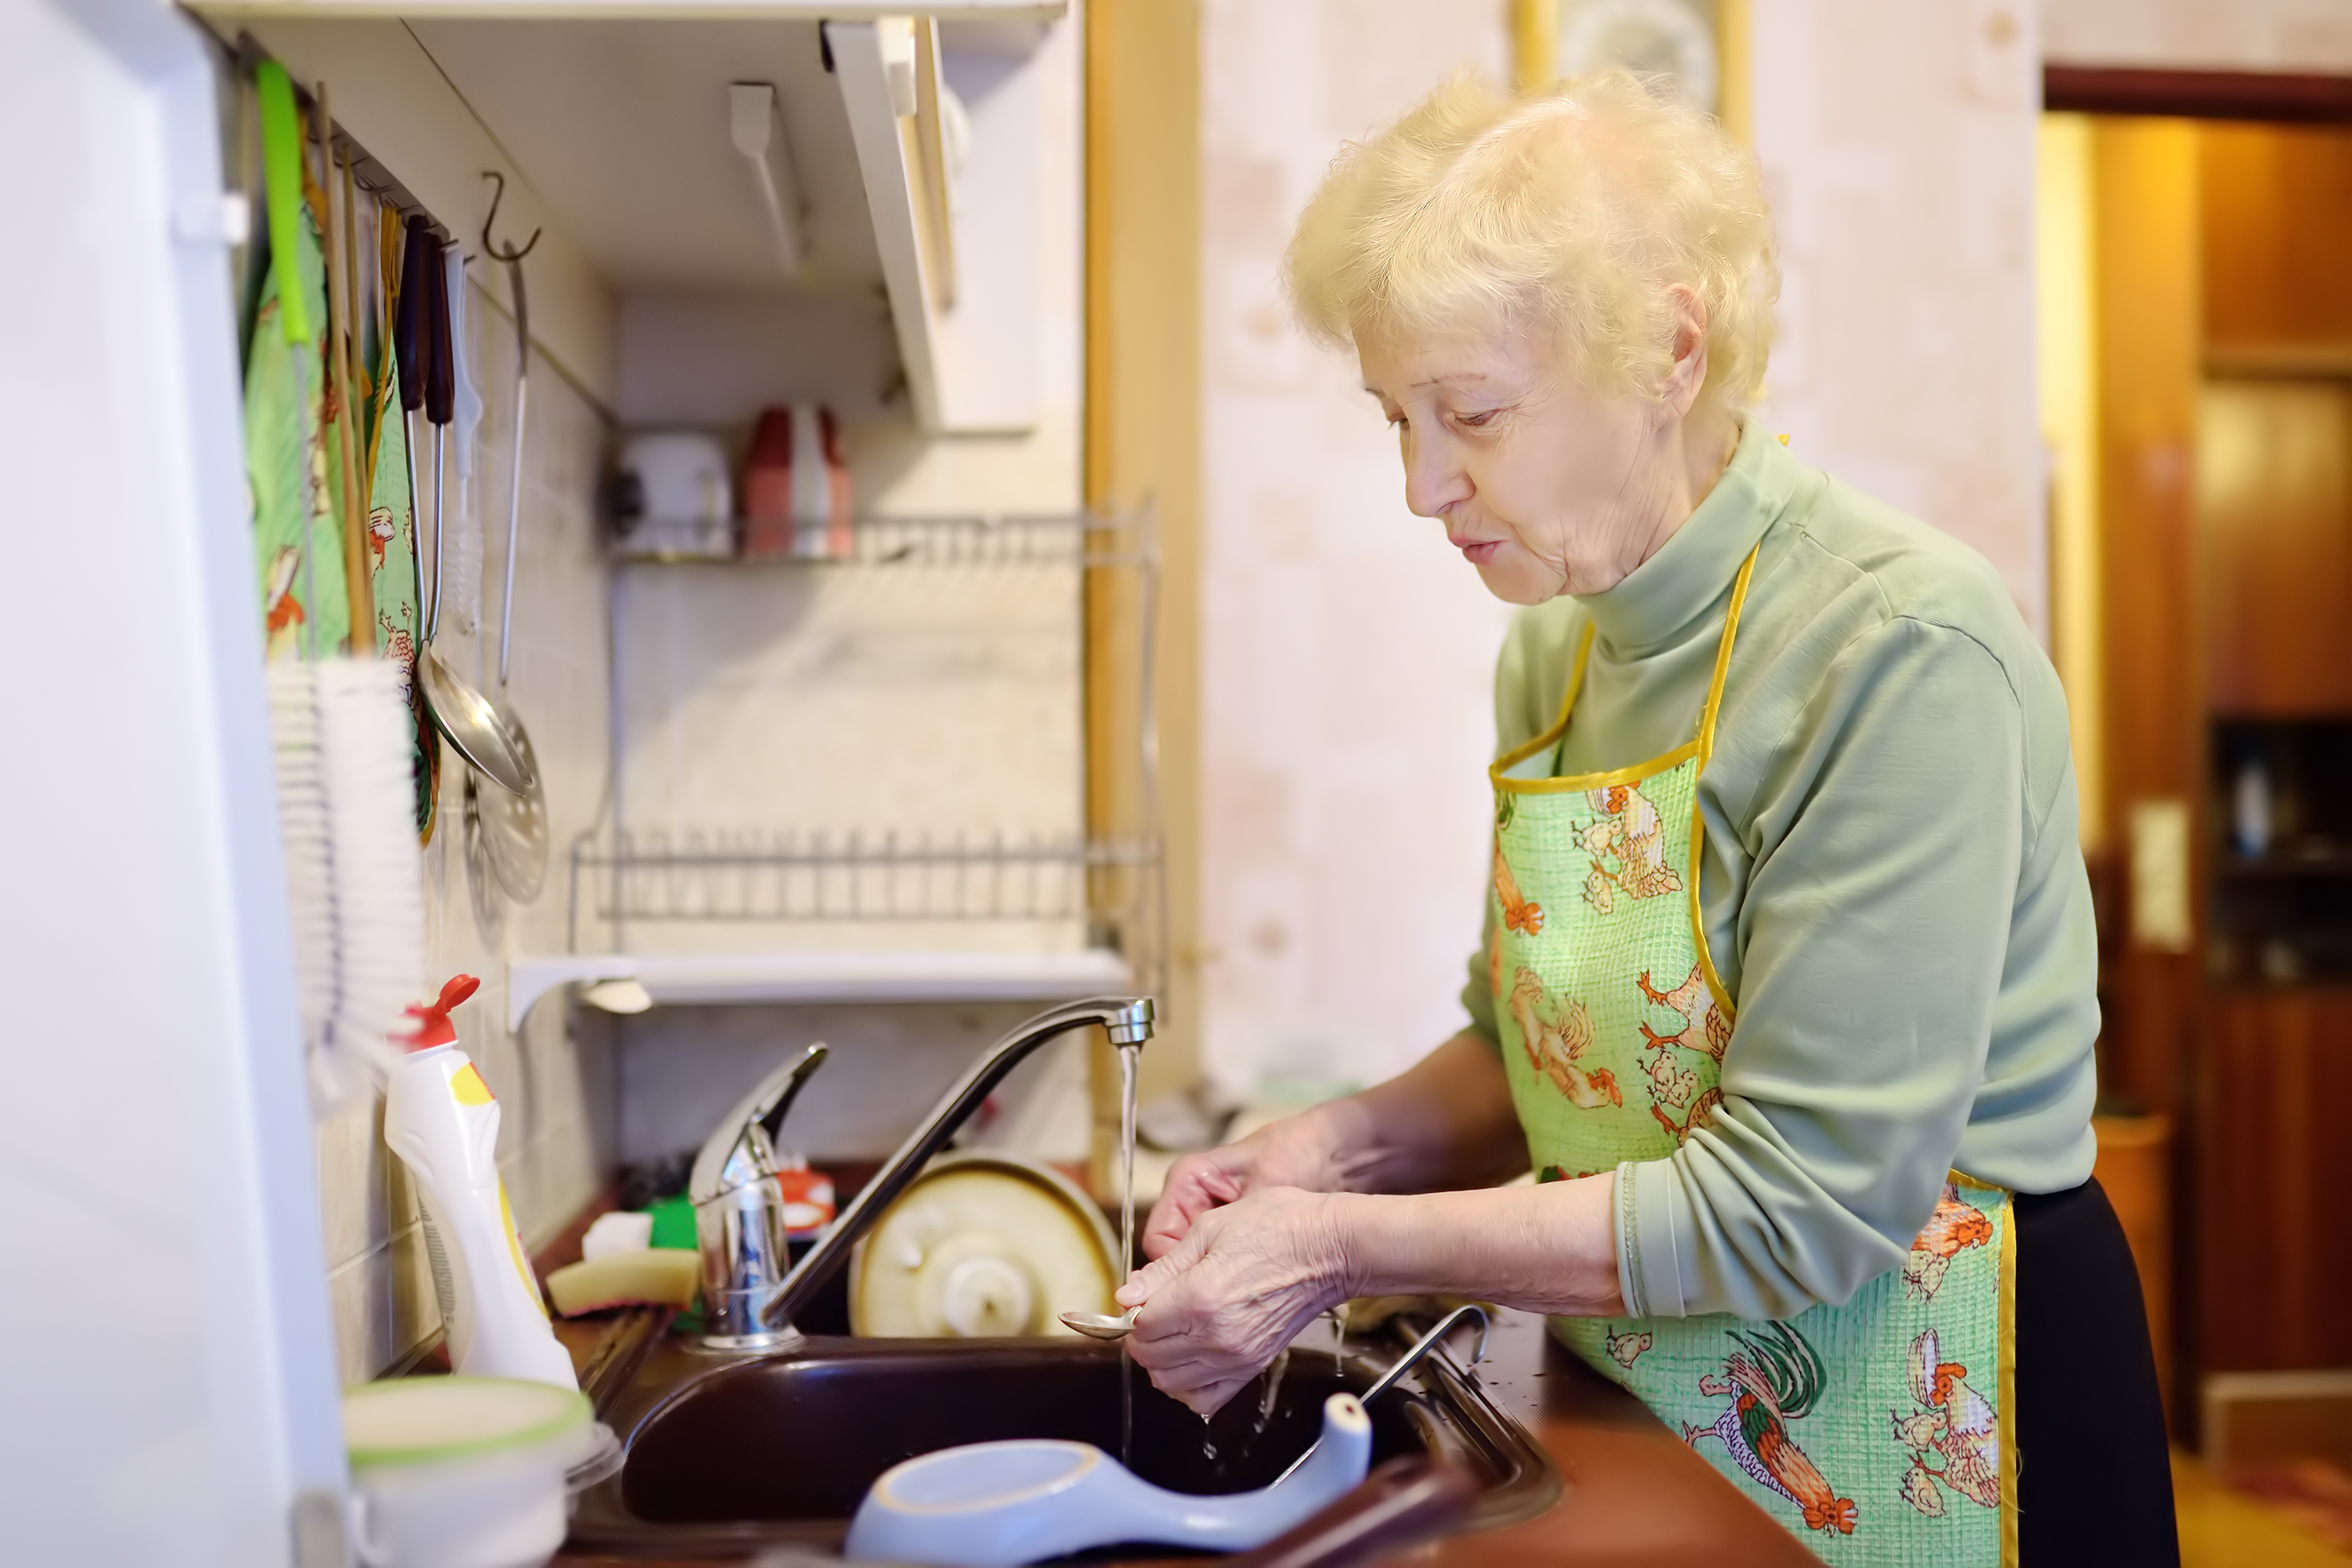 Une dame âgée fait la vaisselle dans la cuisine | Source : Shutterstock